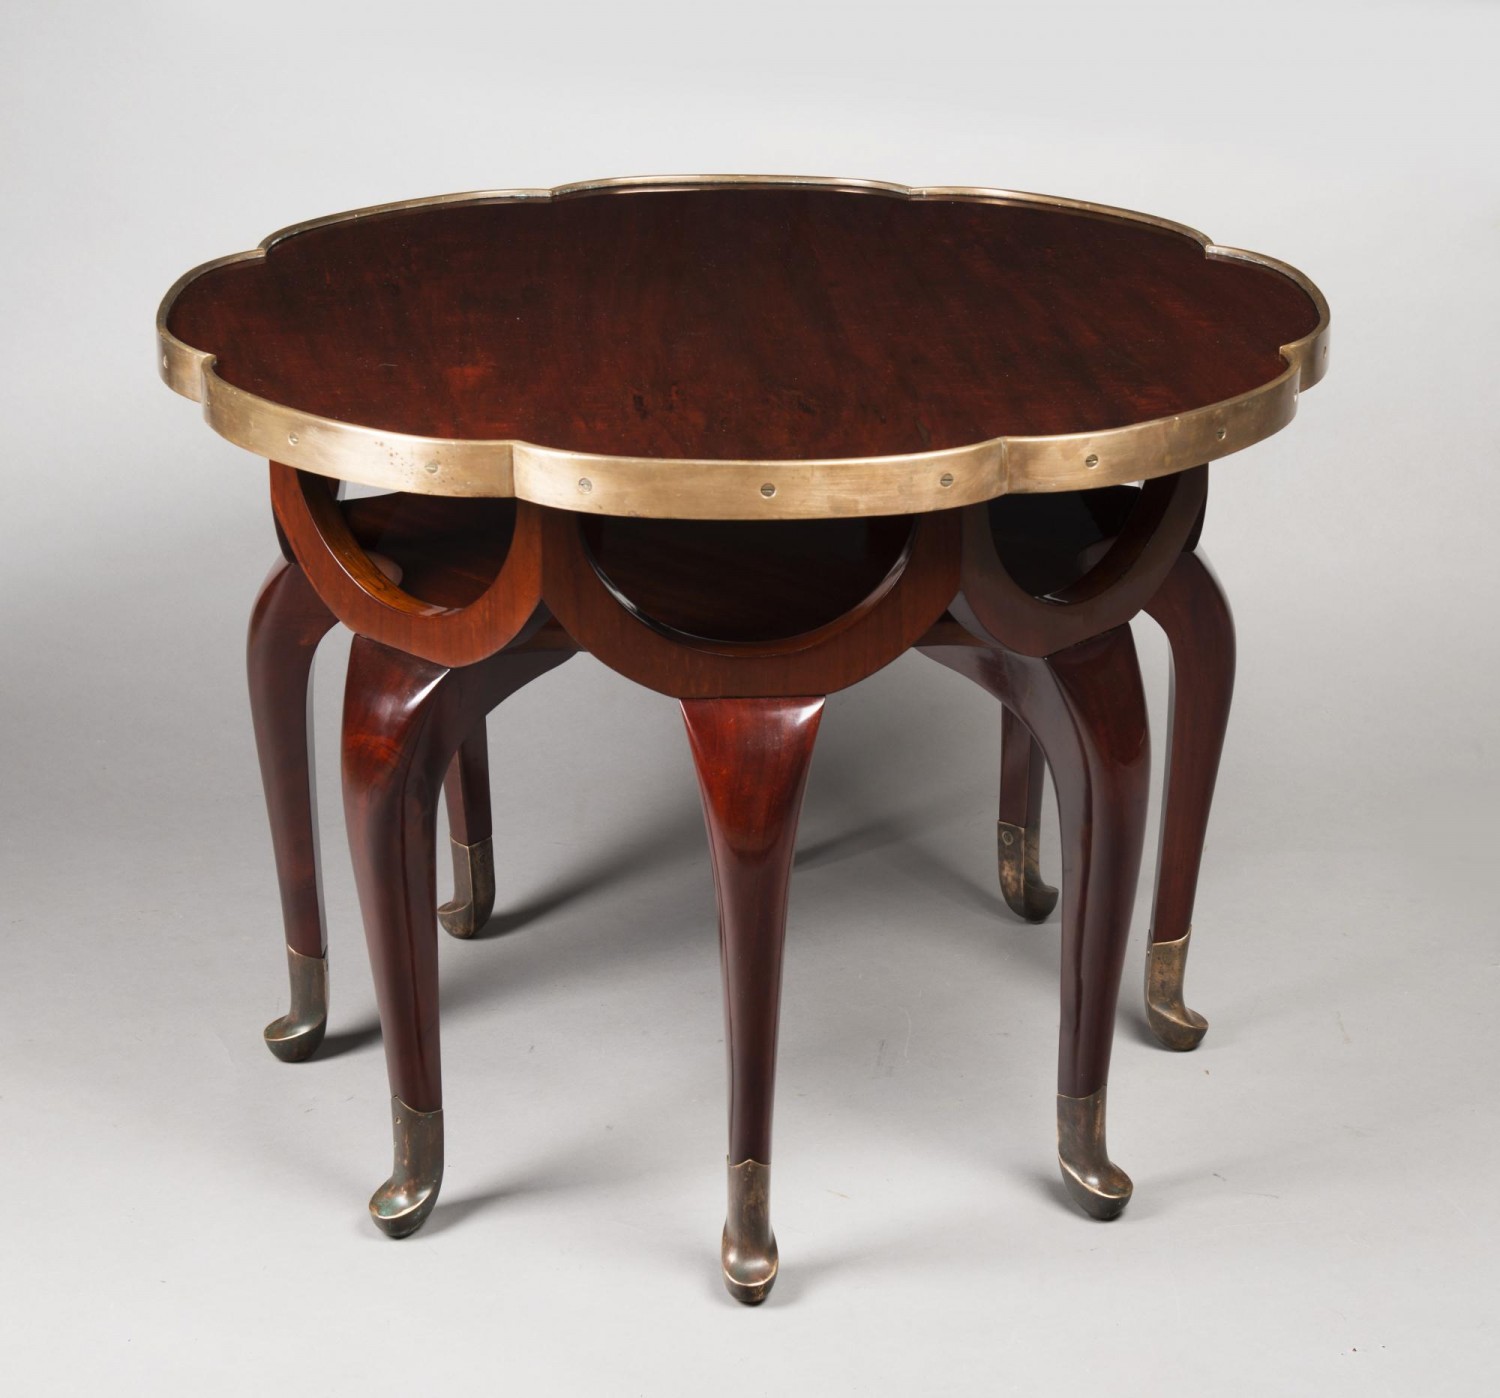 Adolf Loos: čajový stolek (Elefantenrüssel tisch), po 1900  masivní a dýhovaný, mahagon, mosaz, 66 x 86 cm dosažená cena: 520 800 Kč Arthouse Hejtmánek 31.5.2018